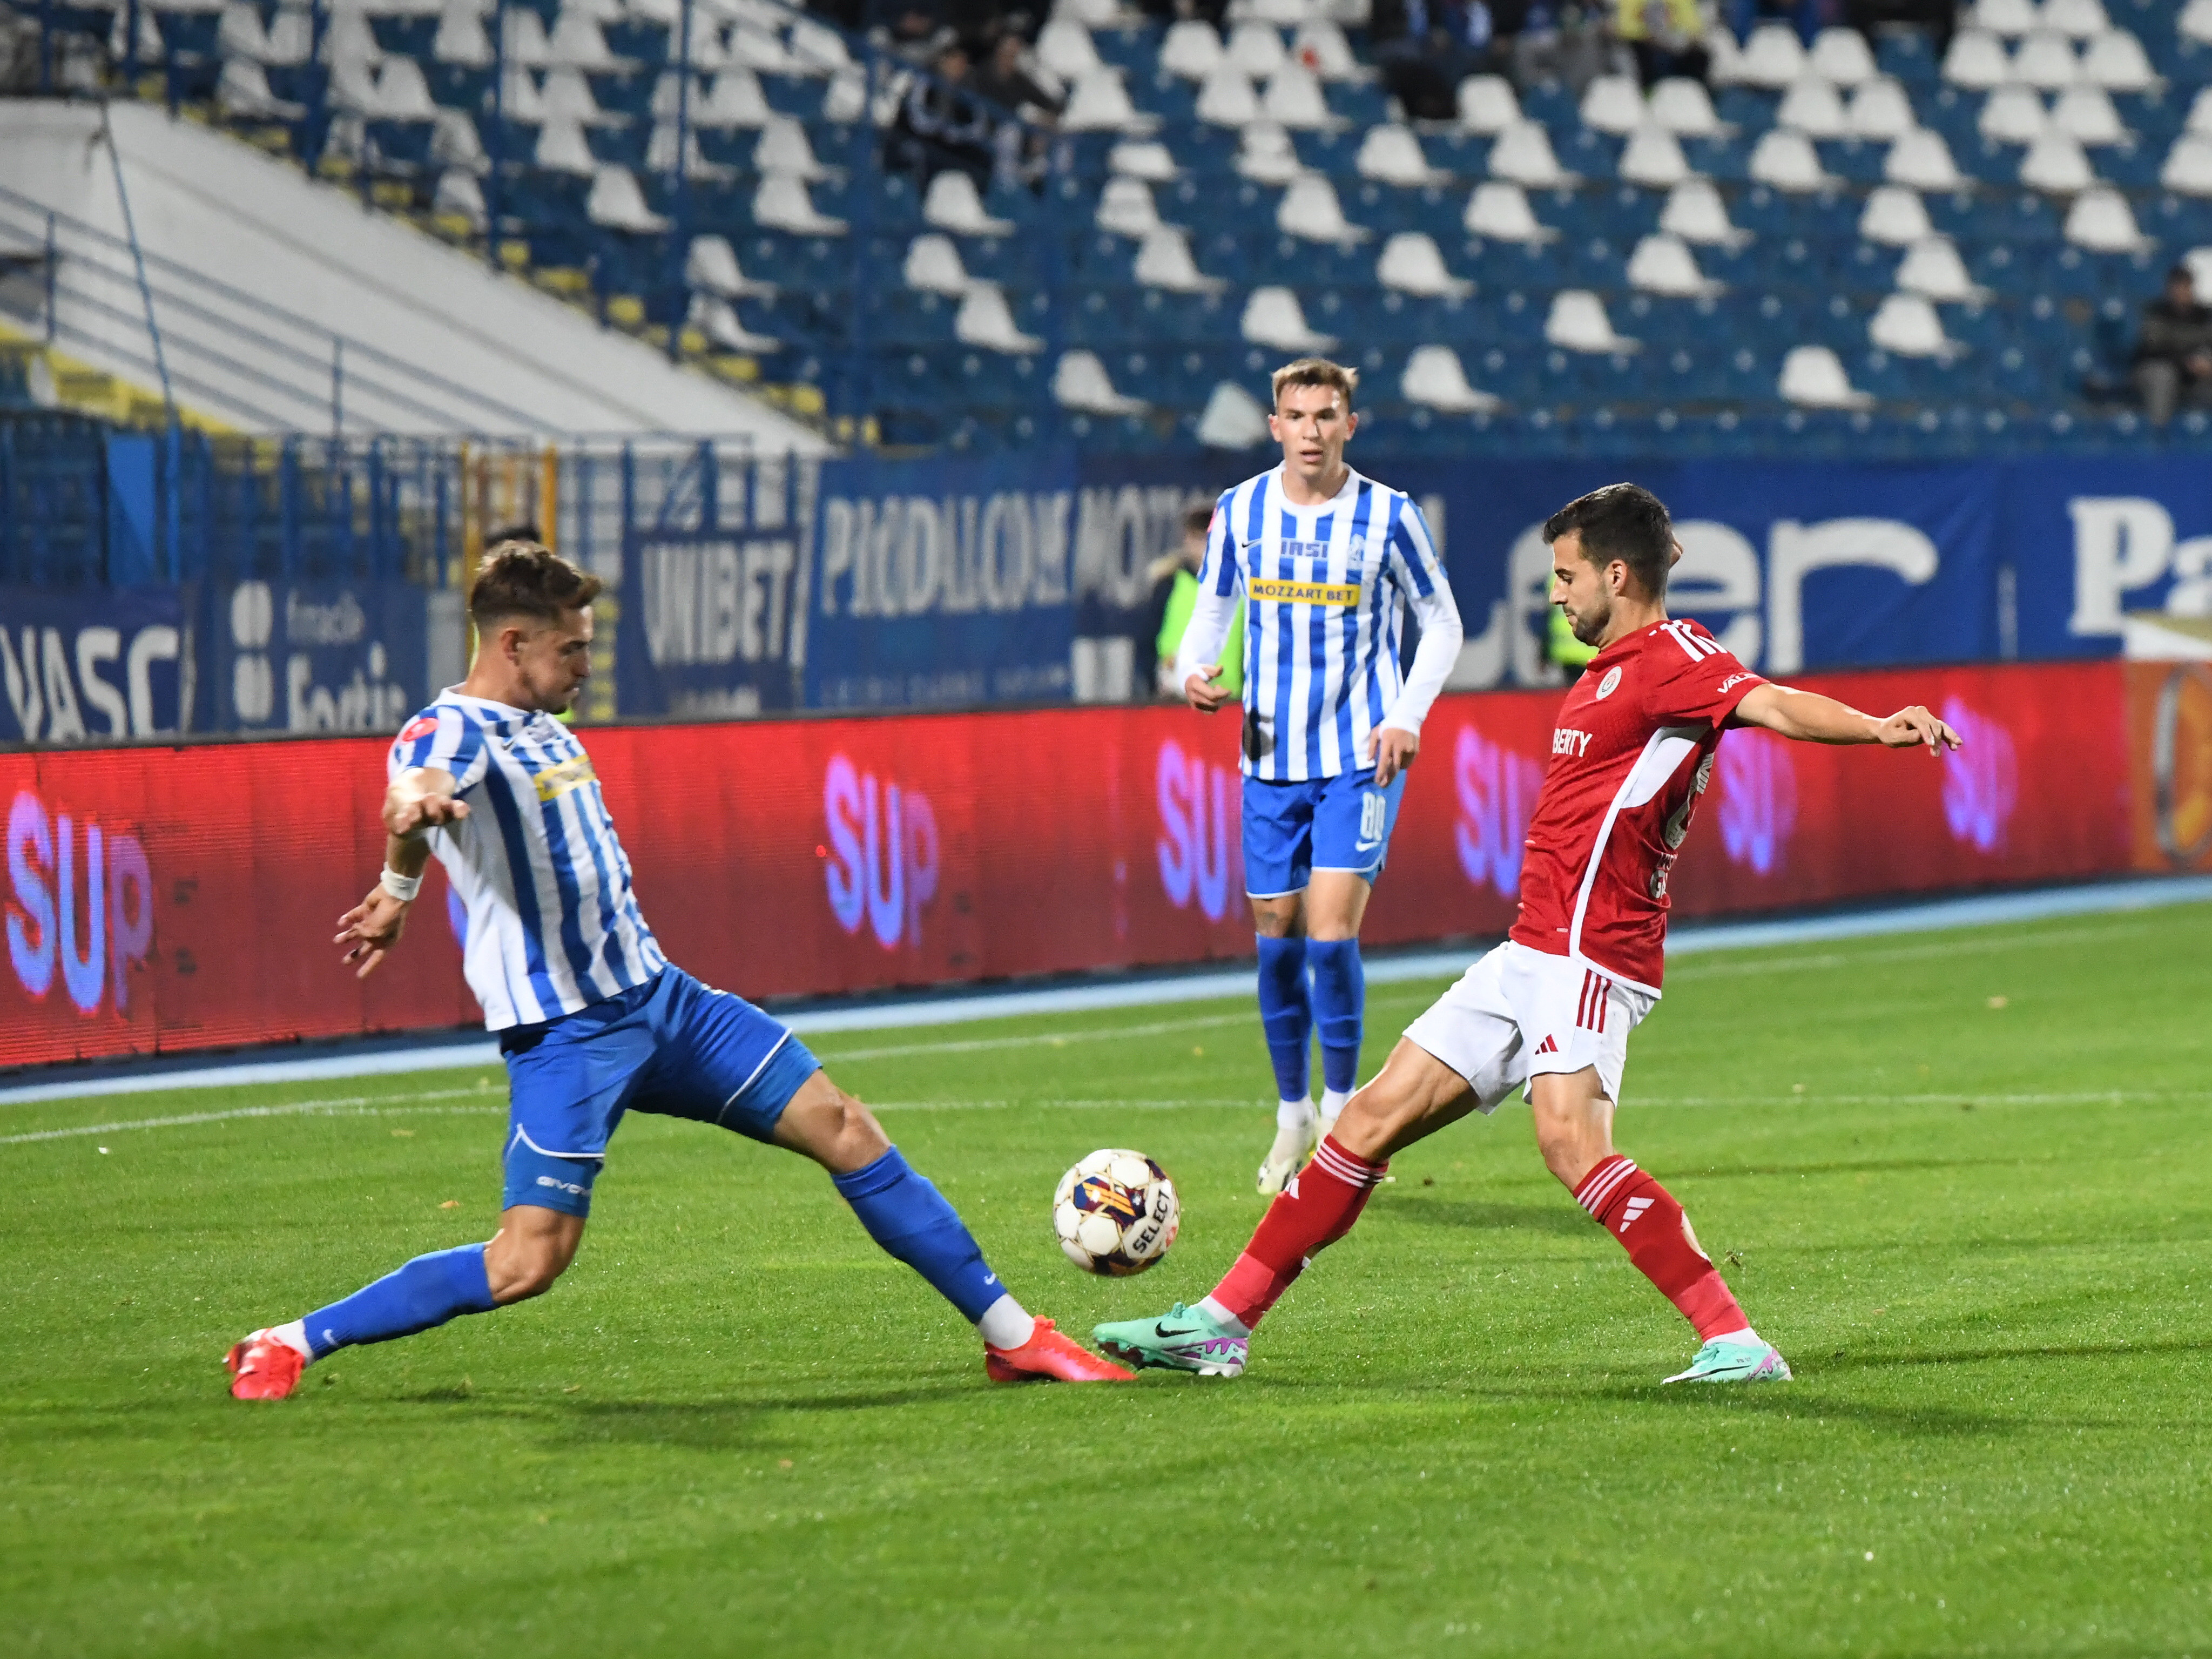 Oțelul - Poli Iași, LIVE VIDEO, 17:00, Digi Sport 1. Derby de Moldova în play-out. Echipele de start